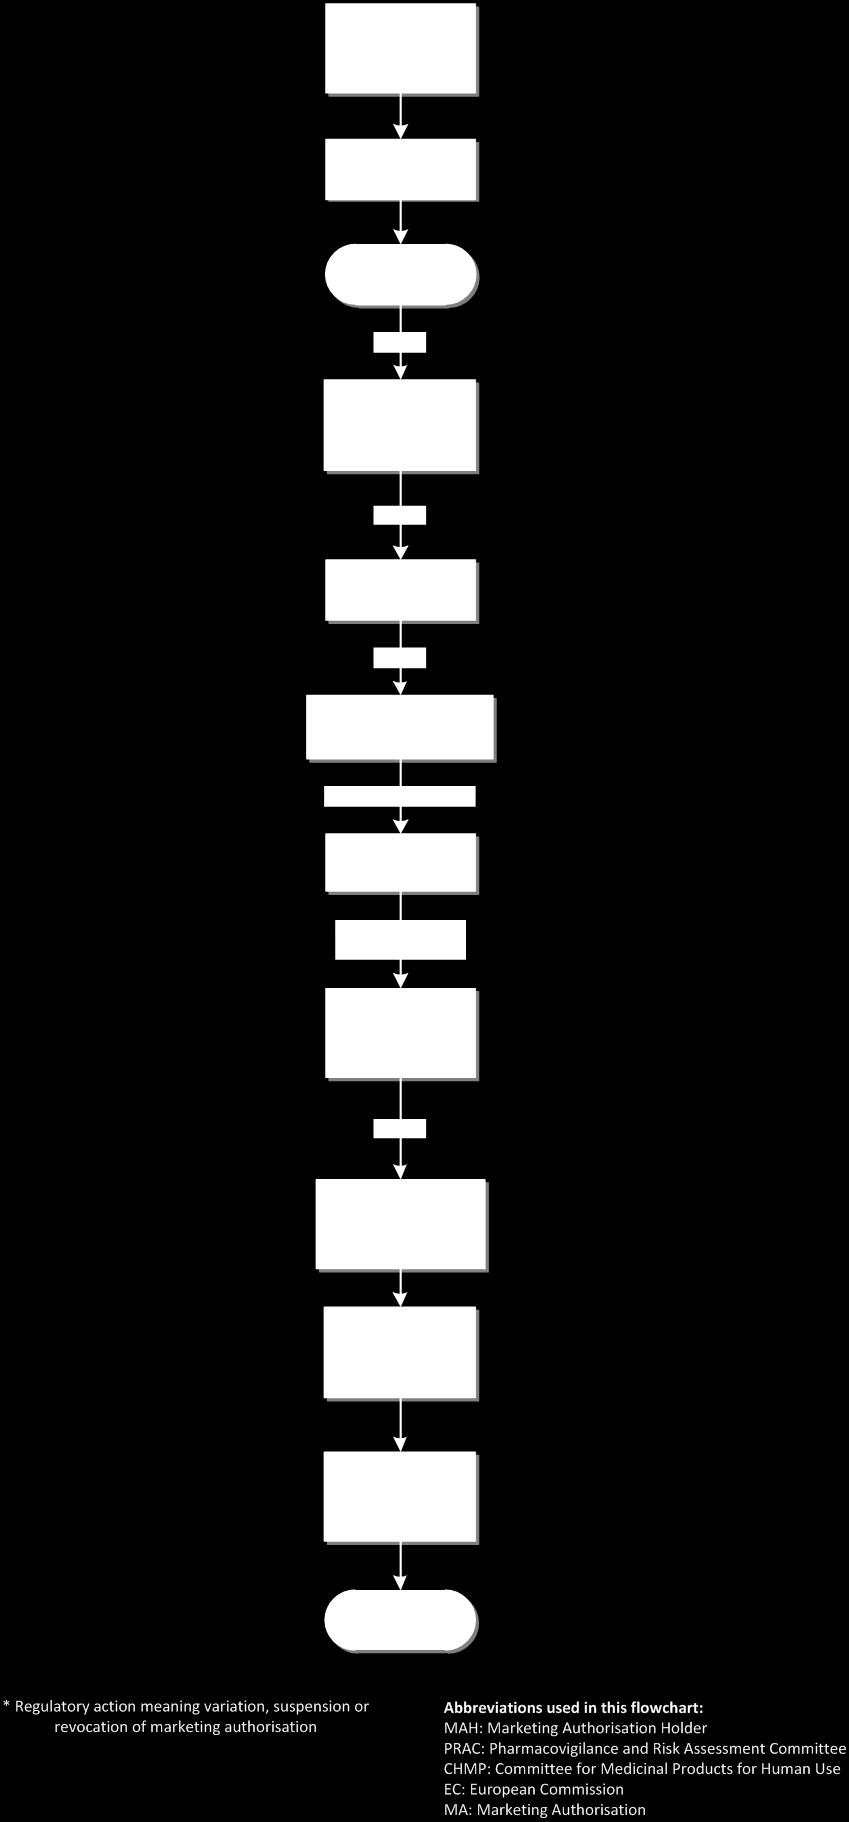 Figure VII.5.